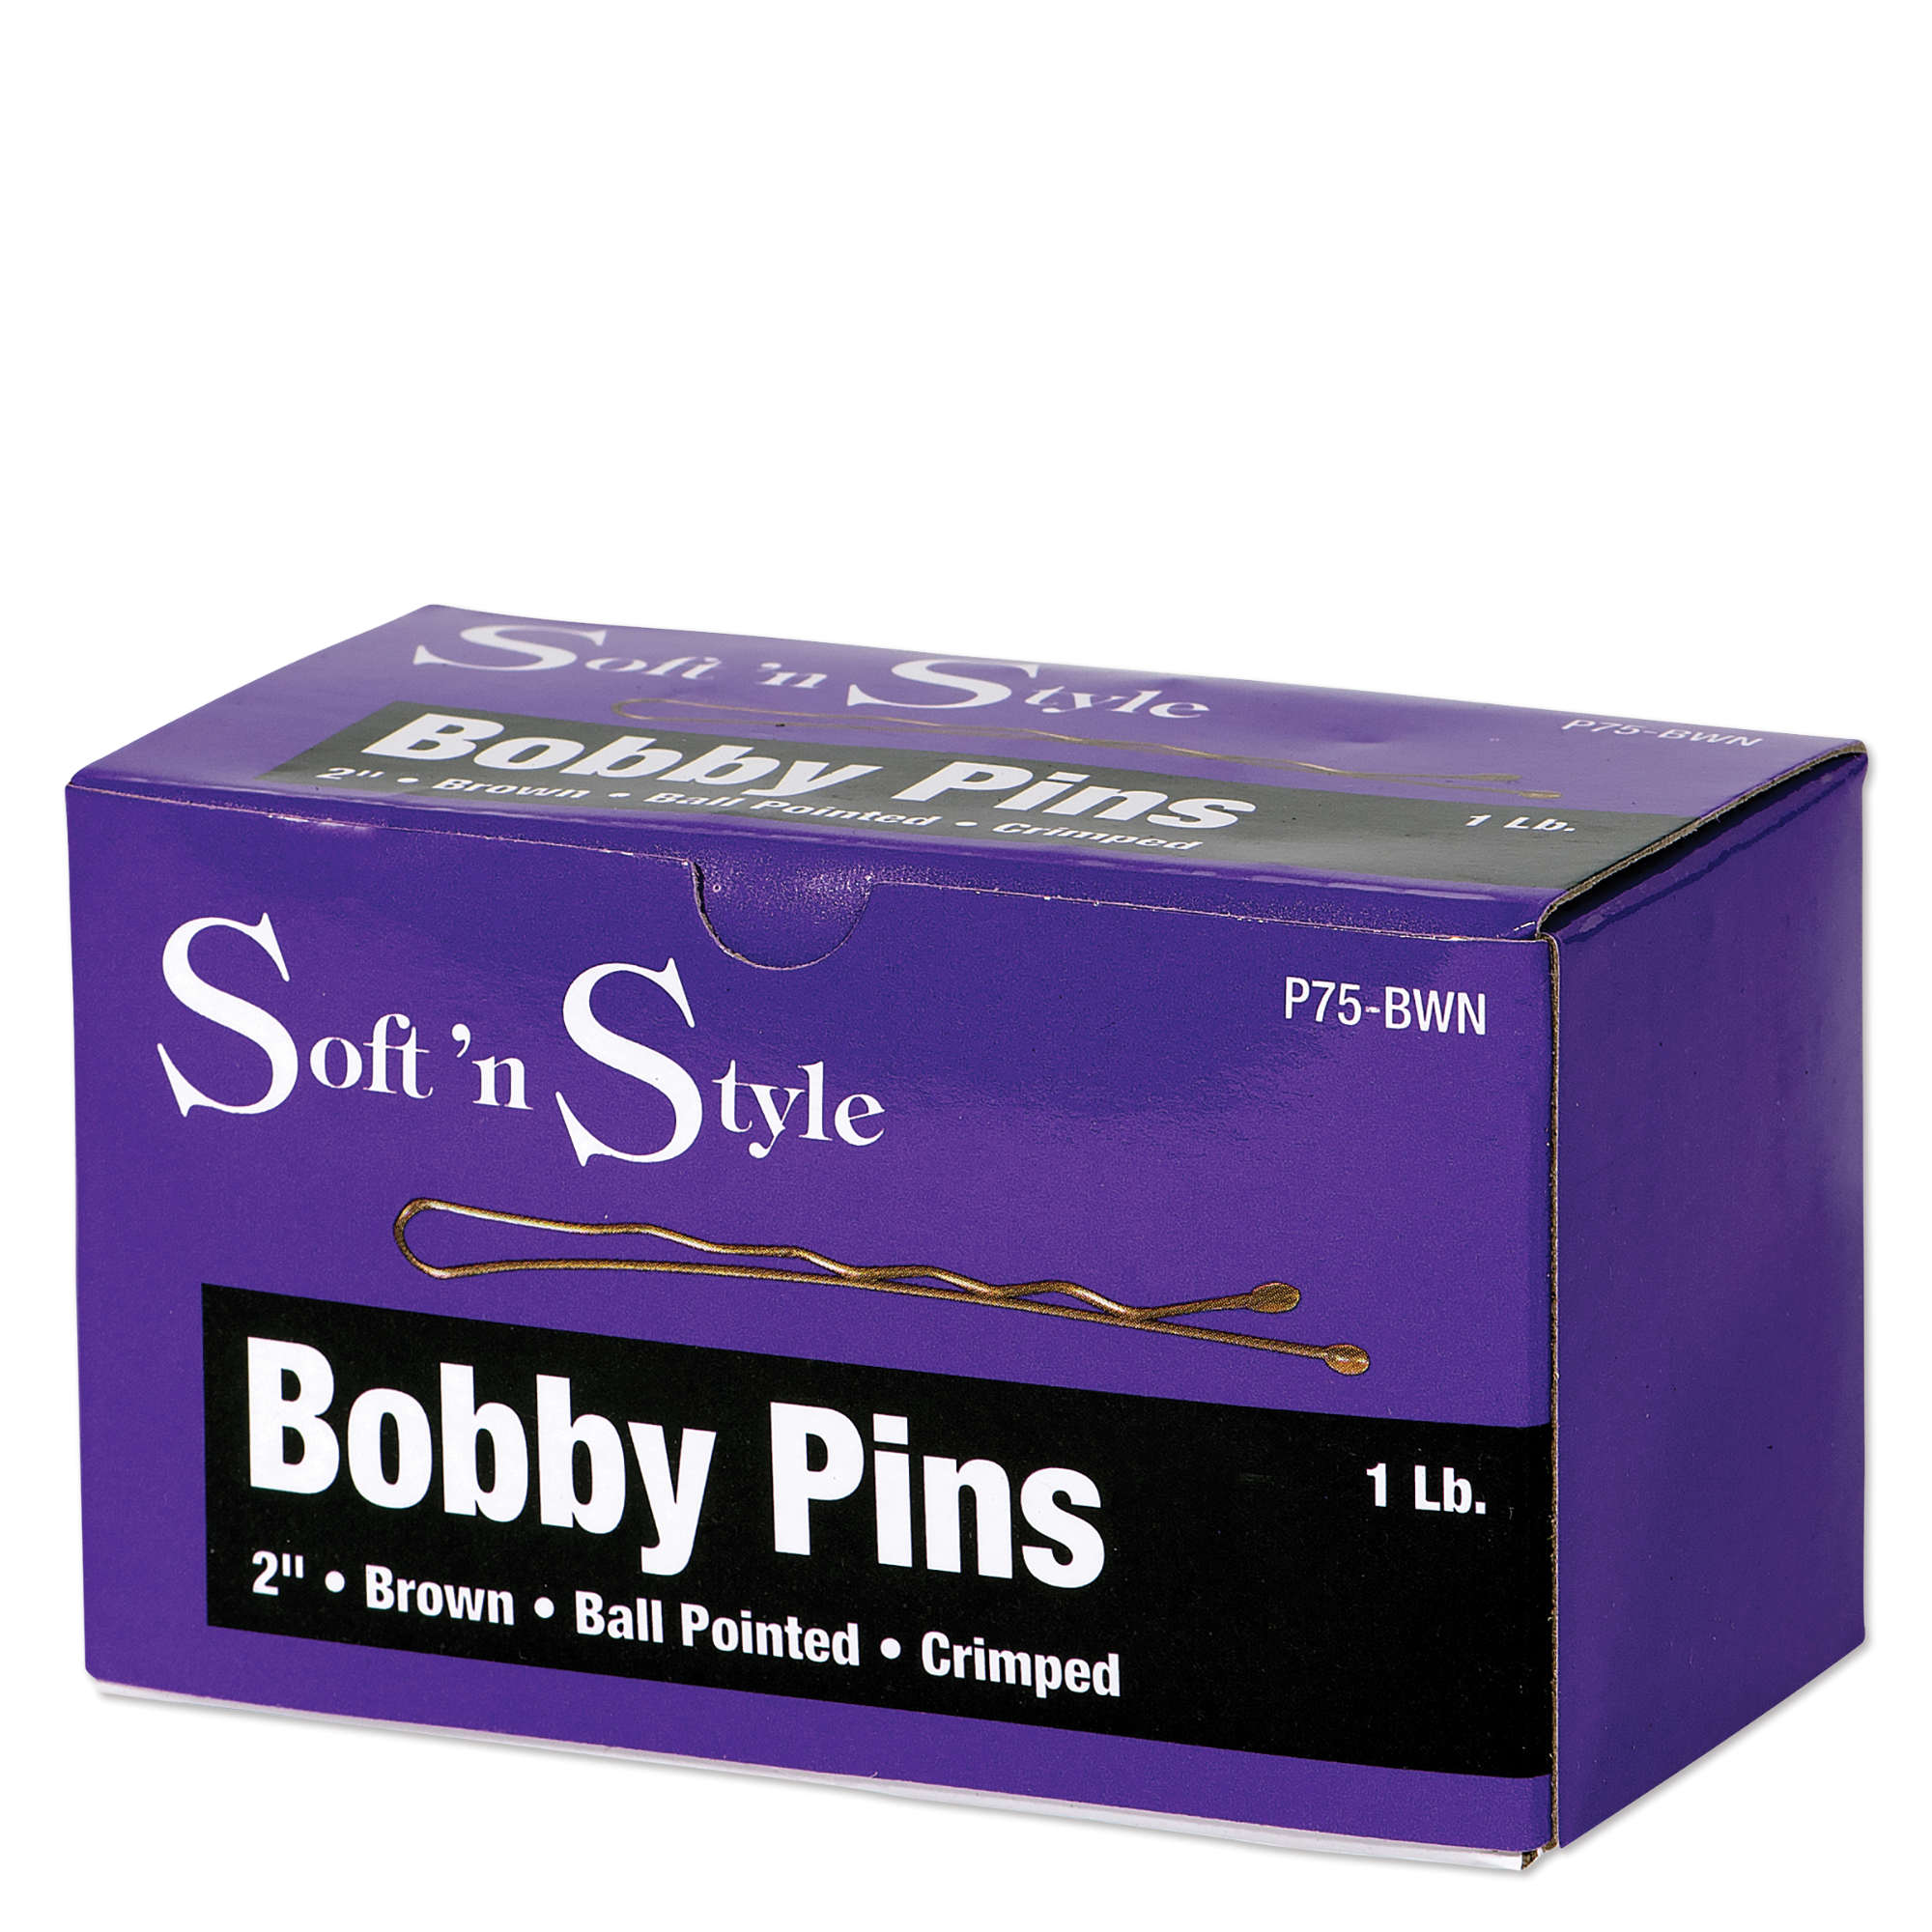 Bobby Pins, Brown, 1 lb. box - 2"